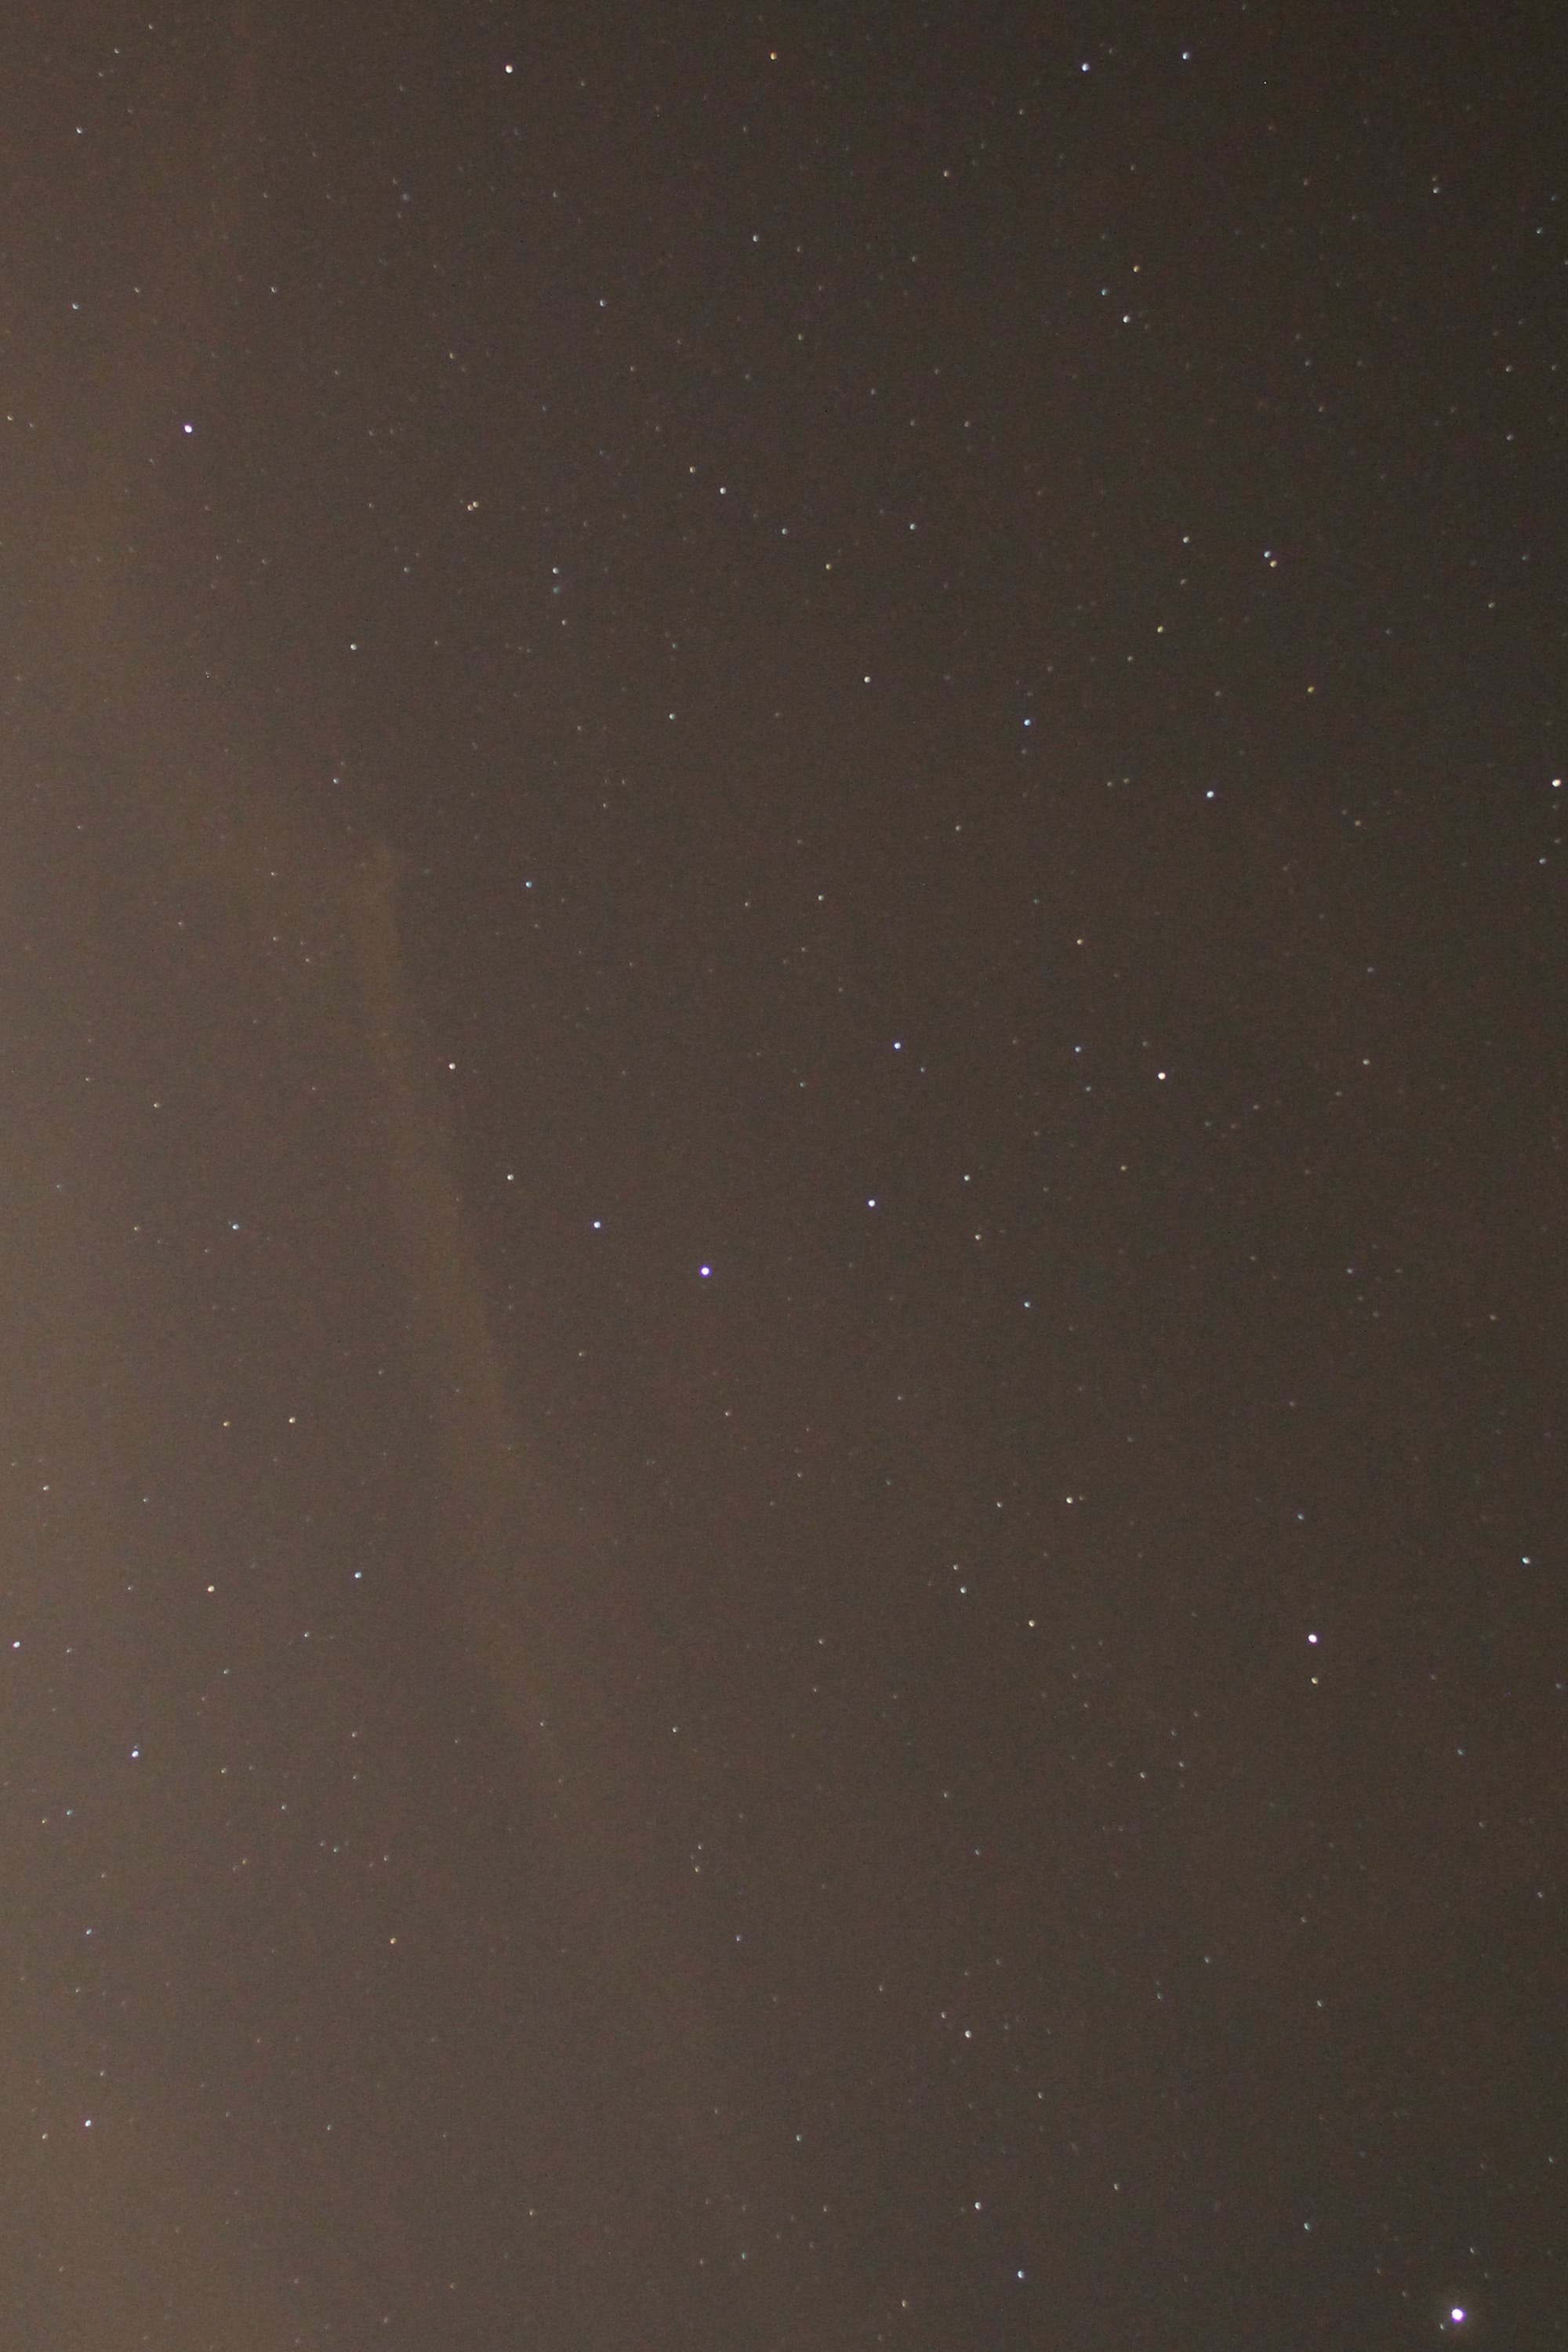 Sternbild Nördliche Krone mit Komet Lovejoy